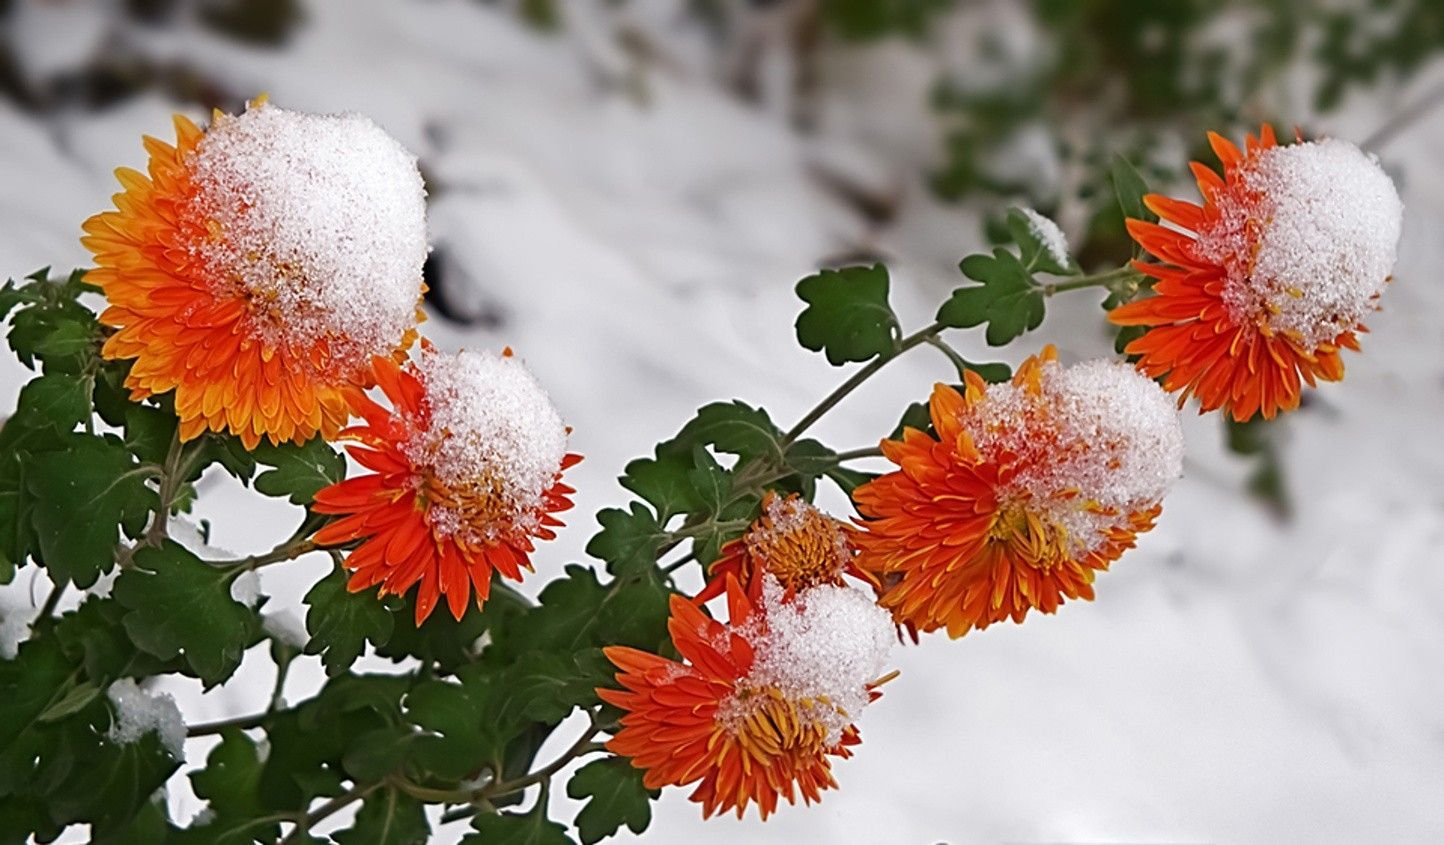 Free download Winter Flowers Image. Winter flowers, Flower wallpaper, Flowers